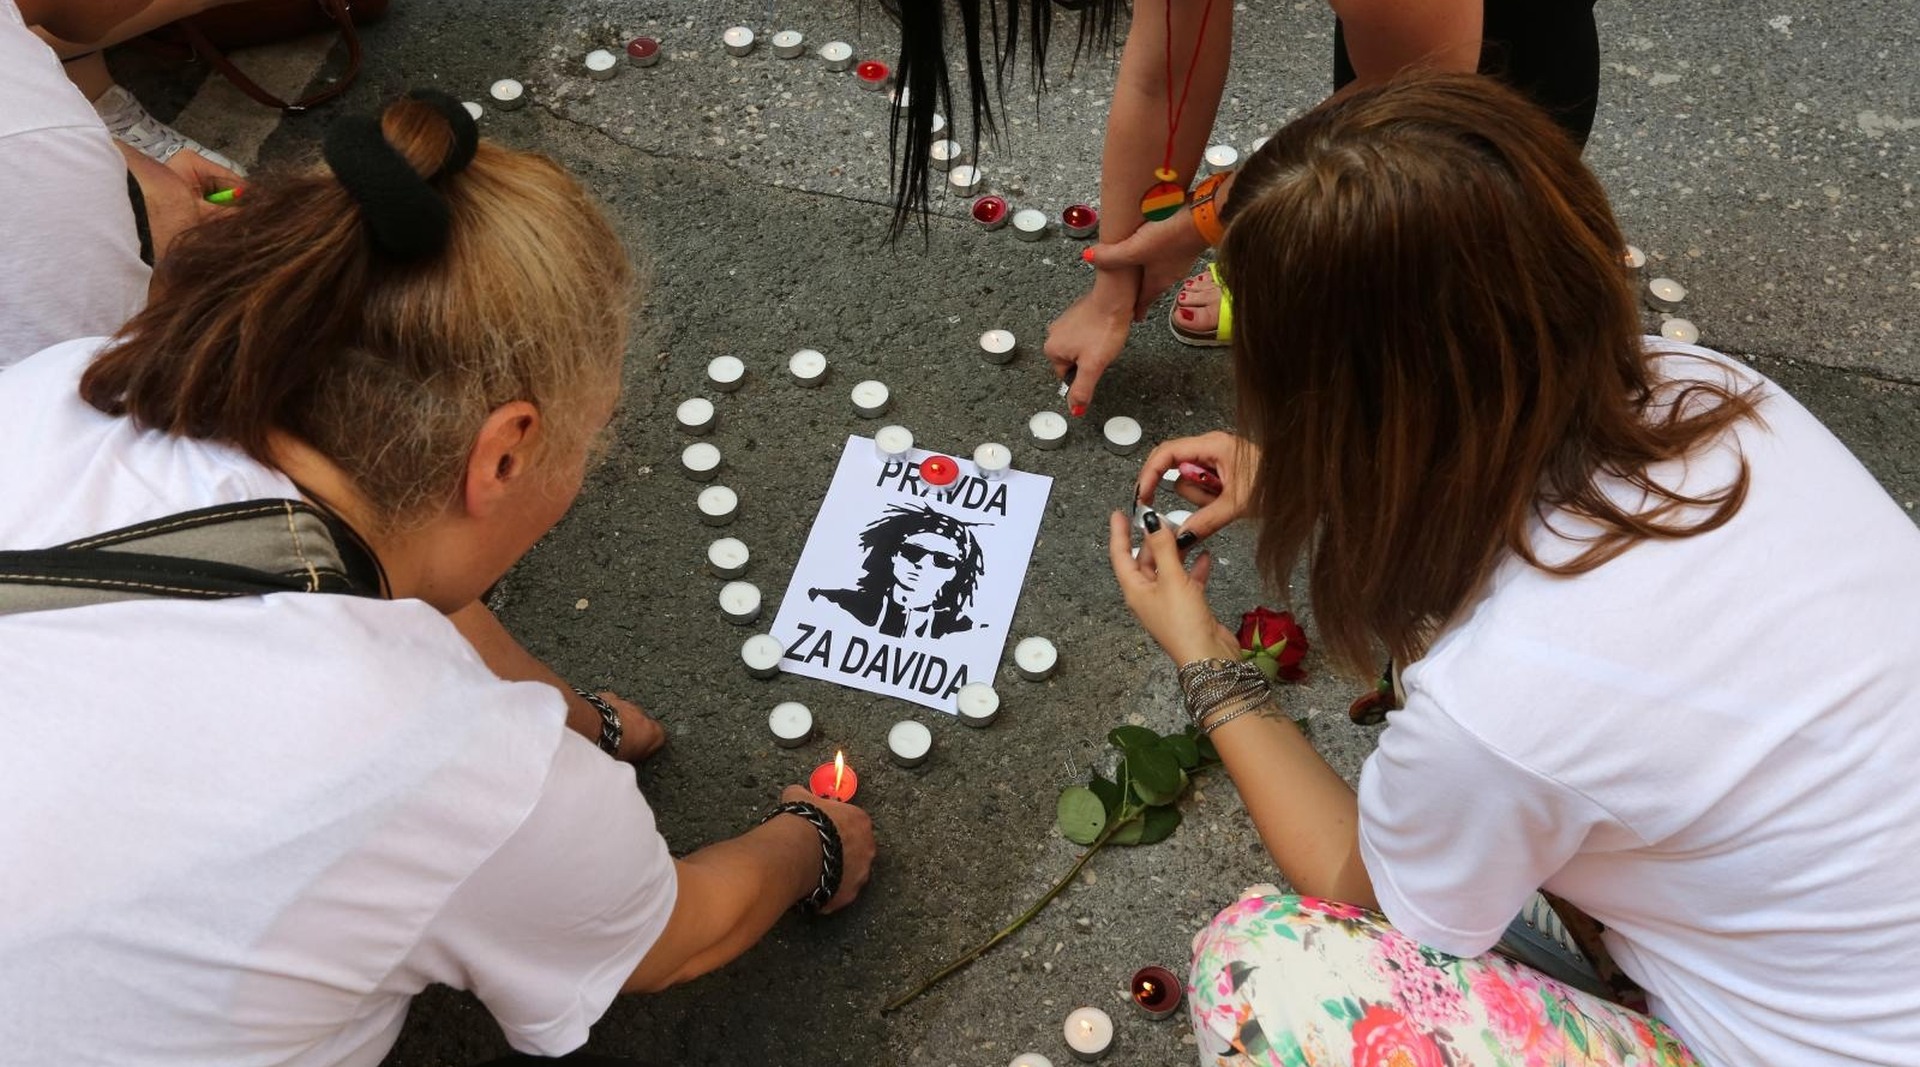 27.05.2018., Rijeka - Skup podrske roditeljima preminulog Davida Dragicevica odrzan je u Kruznoj ulici.
Photo: Goran Kovacic/PIXSELL